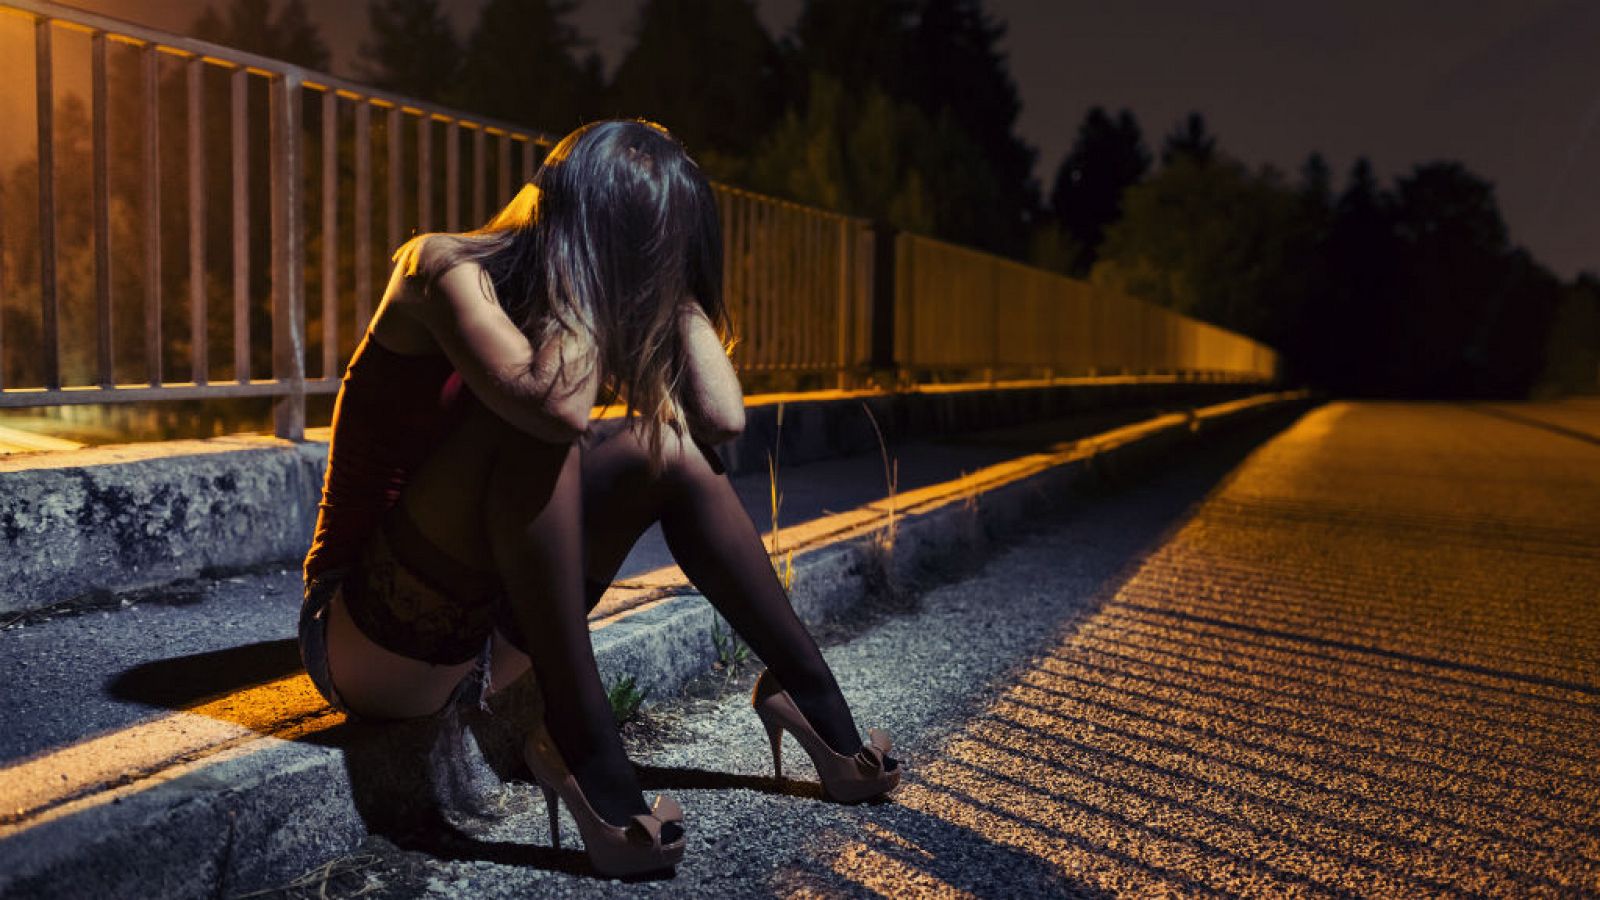 14 horas - La trata de mujeres, una realidad más cercana de lo que creemos - Escuchar ahora